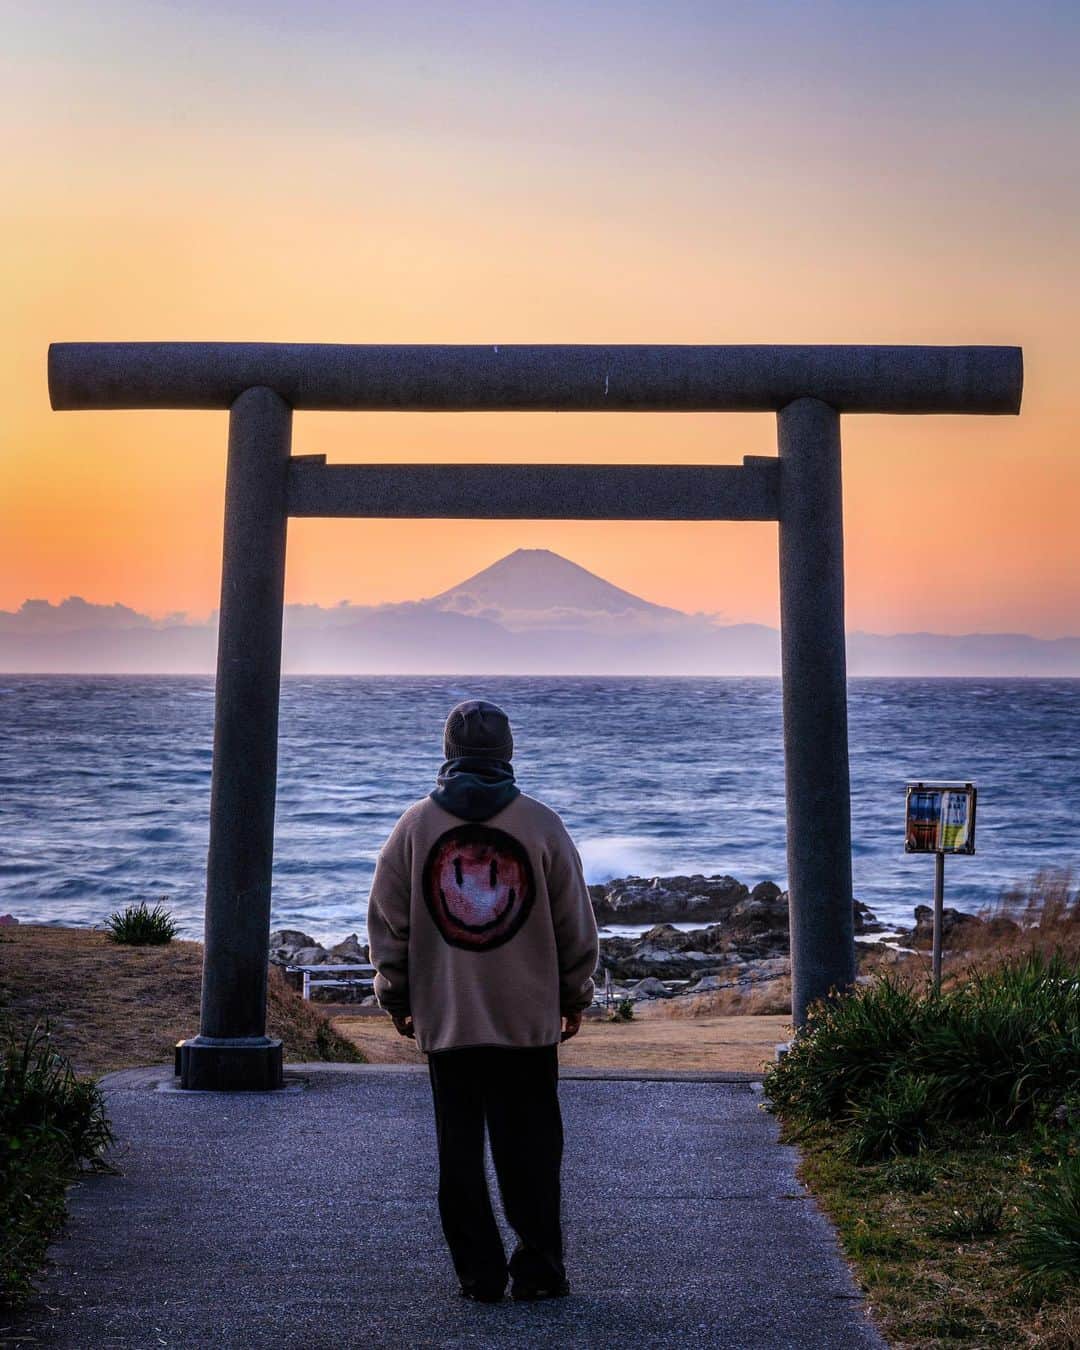 SHOCK EYEのインスタグラム：「千葉県の館山に富士山を遥拝できる洲崎神社がある。  この存在感。 こんな離れた地でも見ることができるって、それだけ富士山が大きいってことをまじまじと実感させられる。  洲崎神社のこの海辺は僕のお気に入りスポット。 海風に打たれながら、 遠くの富士山を眺める。 この瞬間は全てのことから離れて、美しい景色と対面できる。  往来する船、、どこに行くんだろう？  そんな想いを馳せながら、、手を合わせる。  素敵な毎日に感謝🙏✨  #洲崎神社 #富士山 #館山 #shrine #sunosakishrine #mtfuji #fujisan #fujiyama #japantravel #japantrip #canon #canonR5 #beautifuldestinations #discoverjapan #discoverearth #voyaged #awesome_photographers #IamATraveler #wonderful_places #japanphoto #japanphotography #japan_of_insta #livingonearth #theglobewanderer」